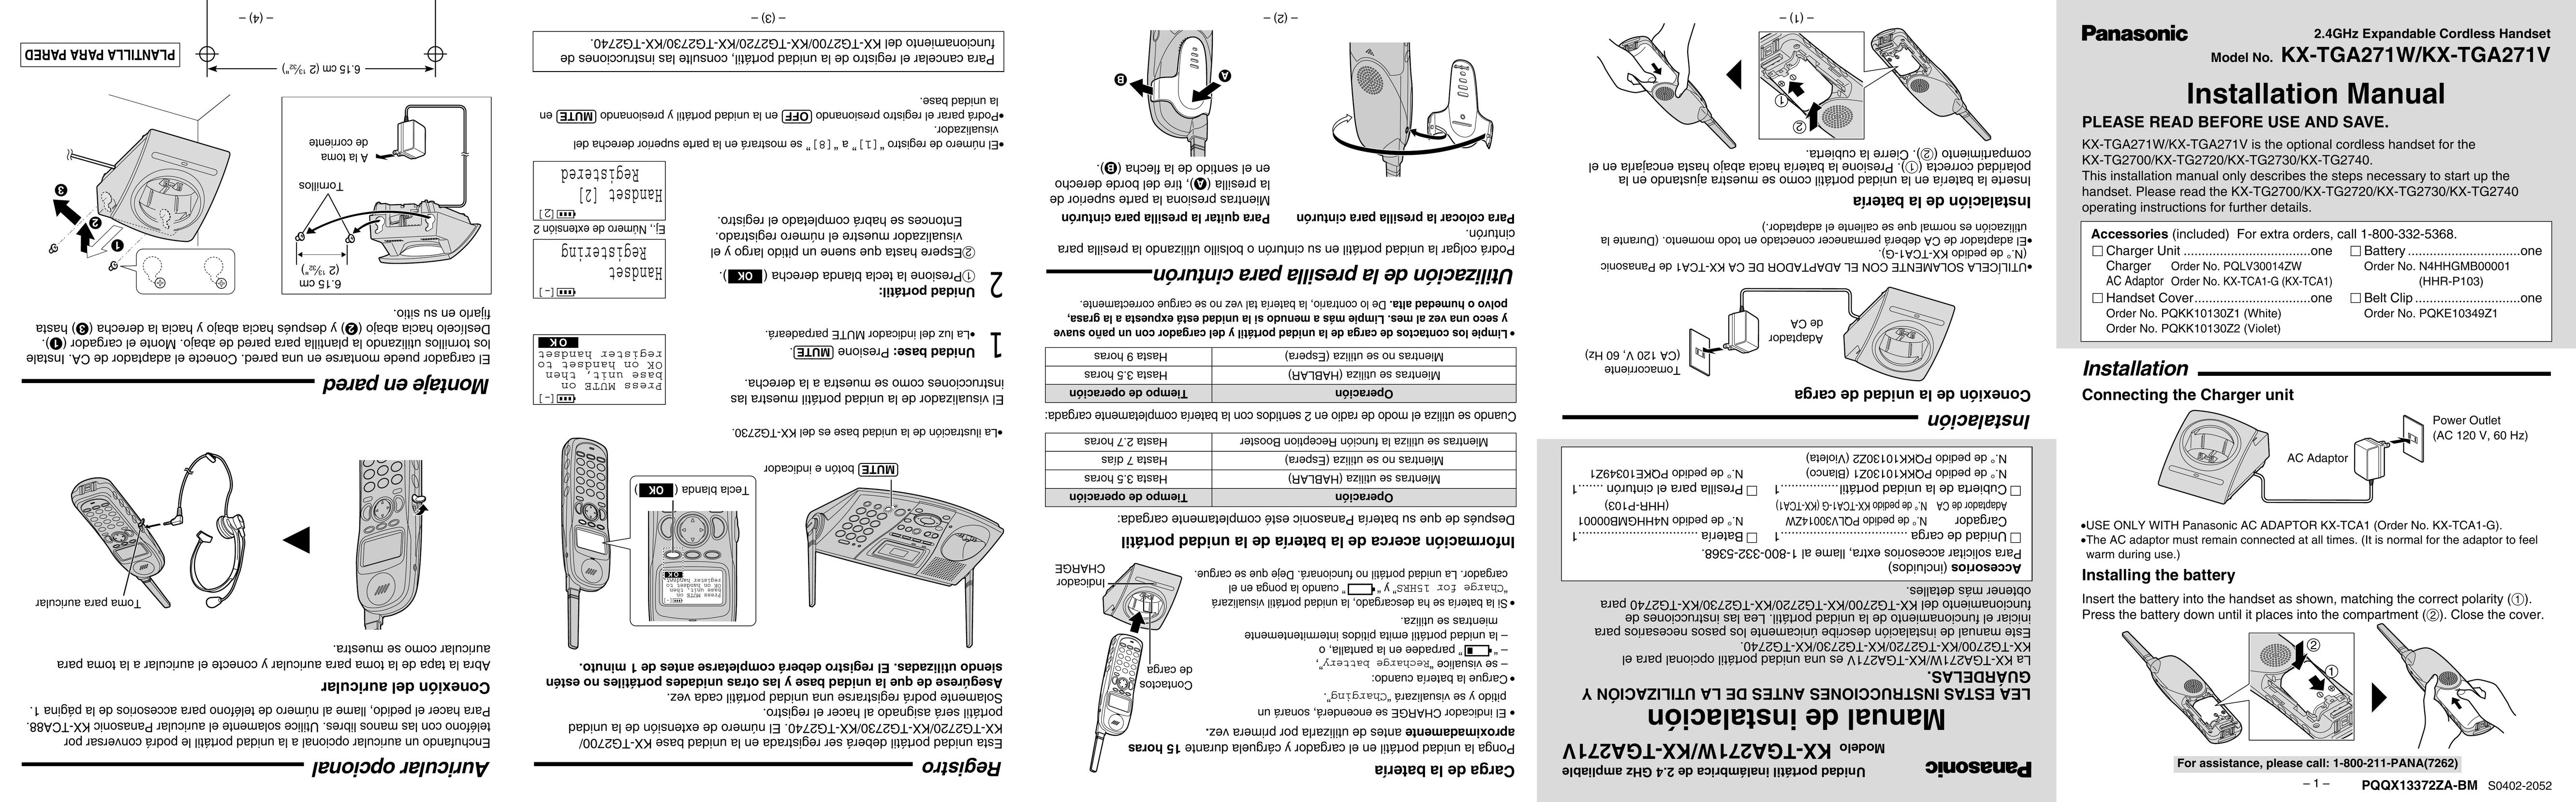 Panasonic KX-TGA271V Work Light User Manual